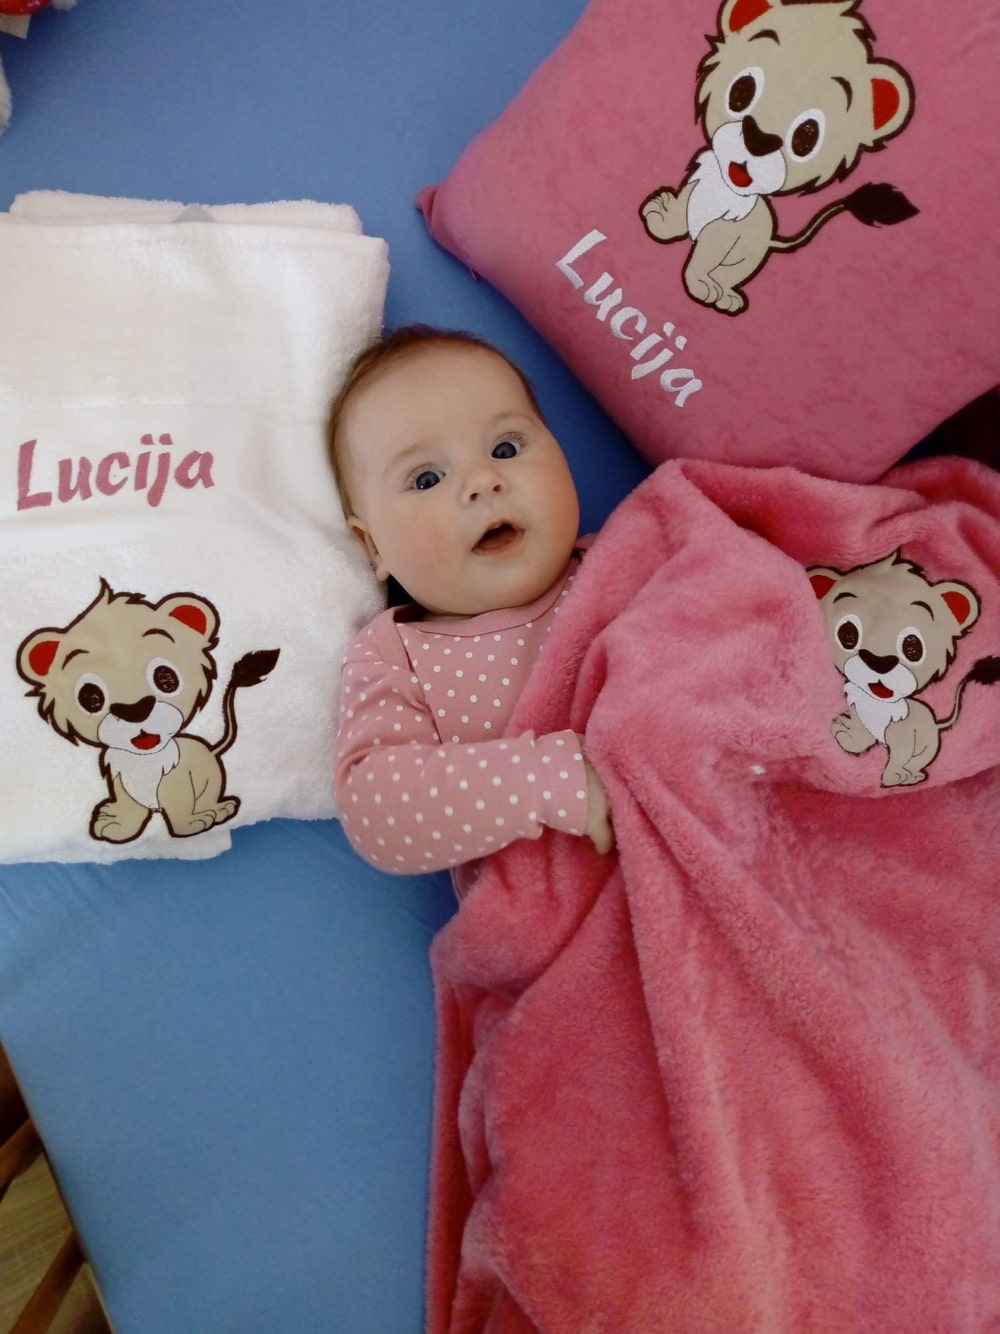 Die entzückende Baby-Mädchen genießt ihr personalisiertes Set, bestehend aus einem Kissen, einer Decke und einem Handtuch, die alle mit ihrem Namen angepasst sind.